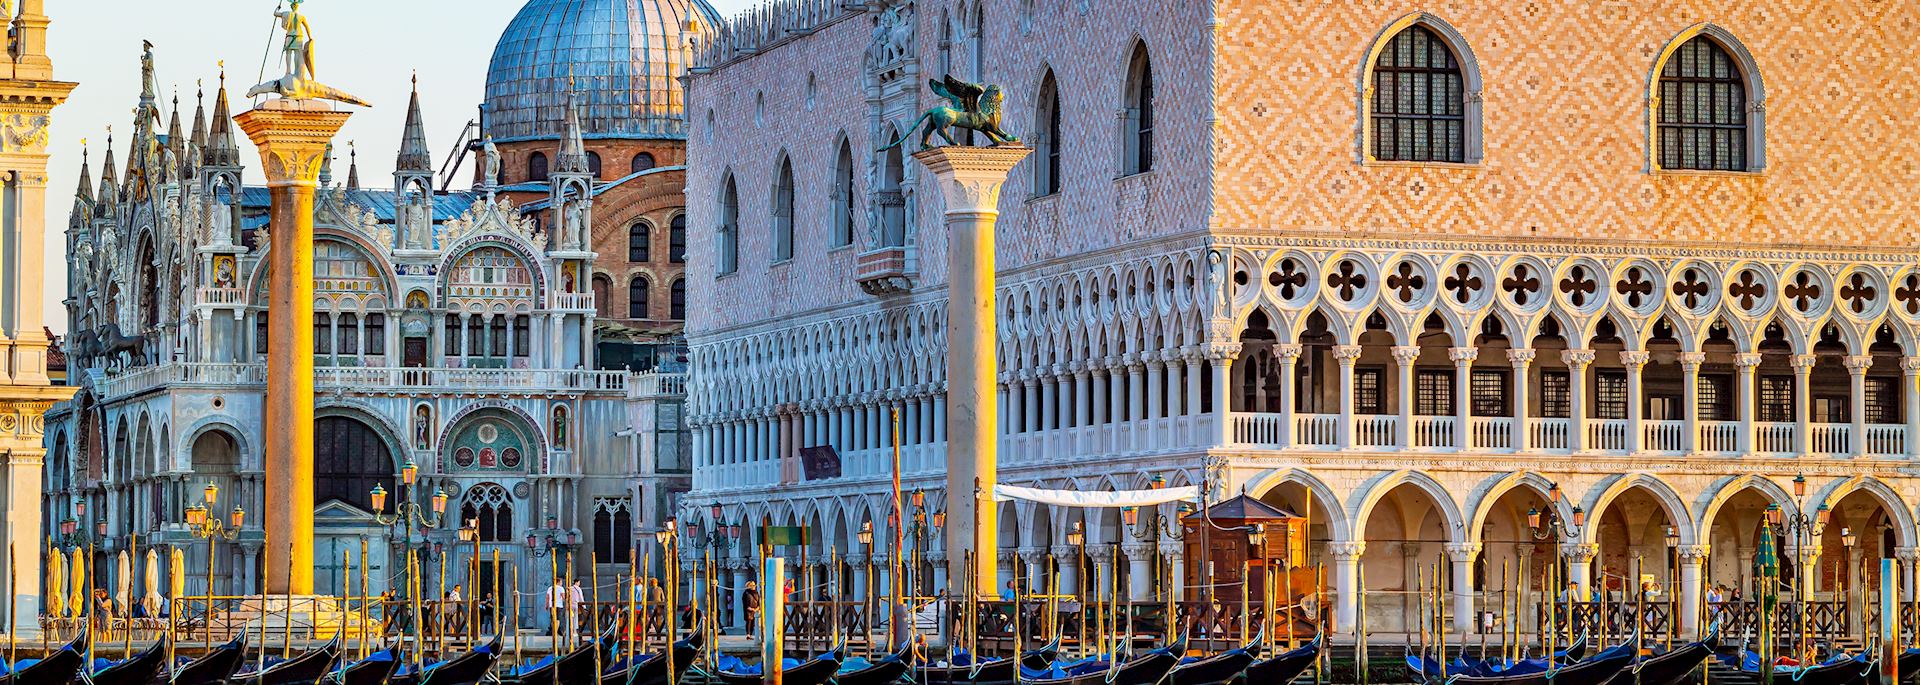 St Mark’s Square, Venice